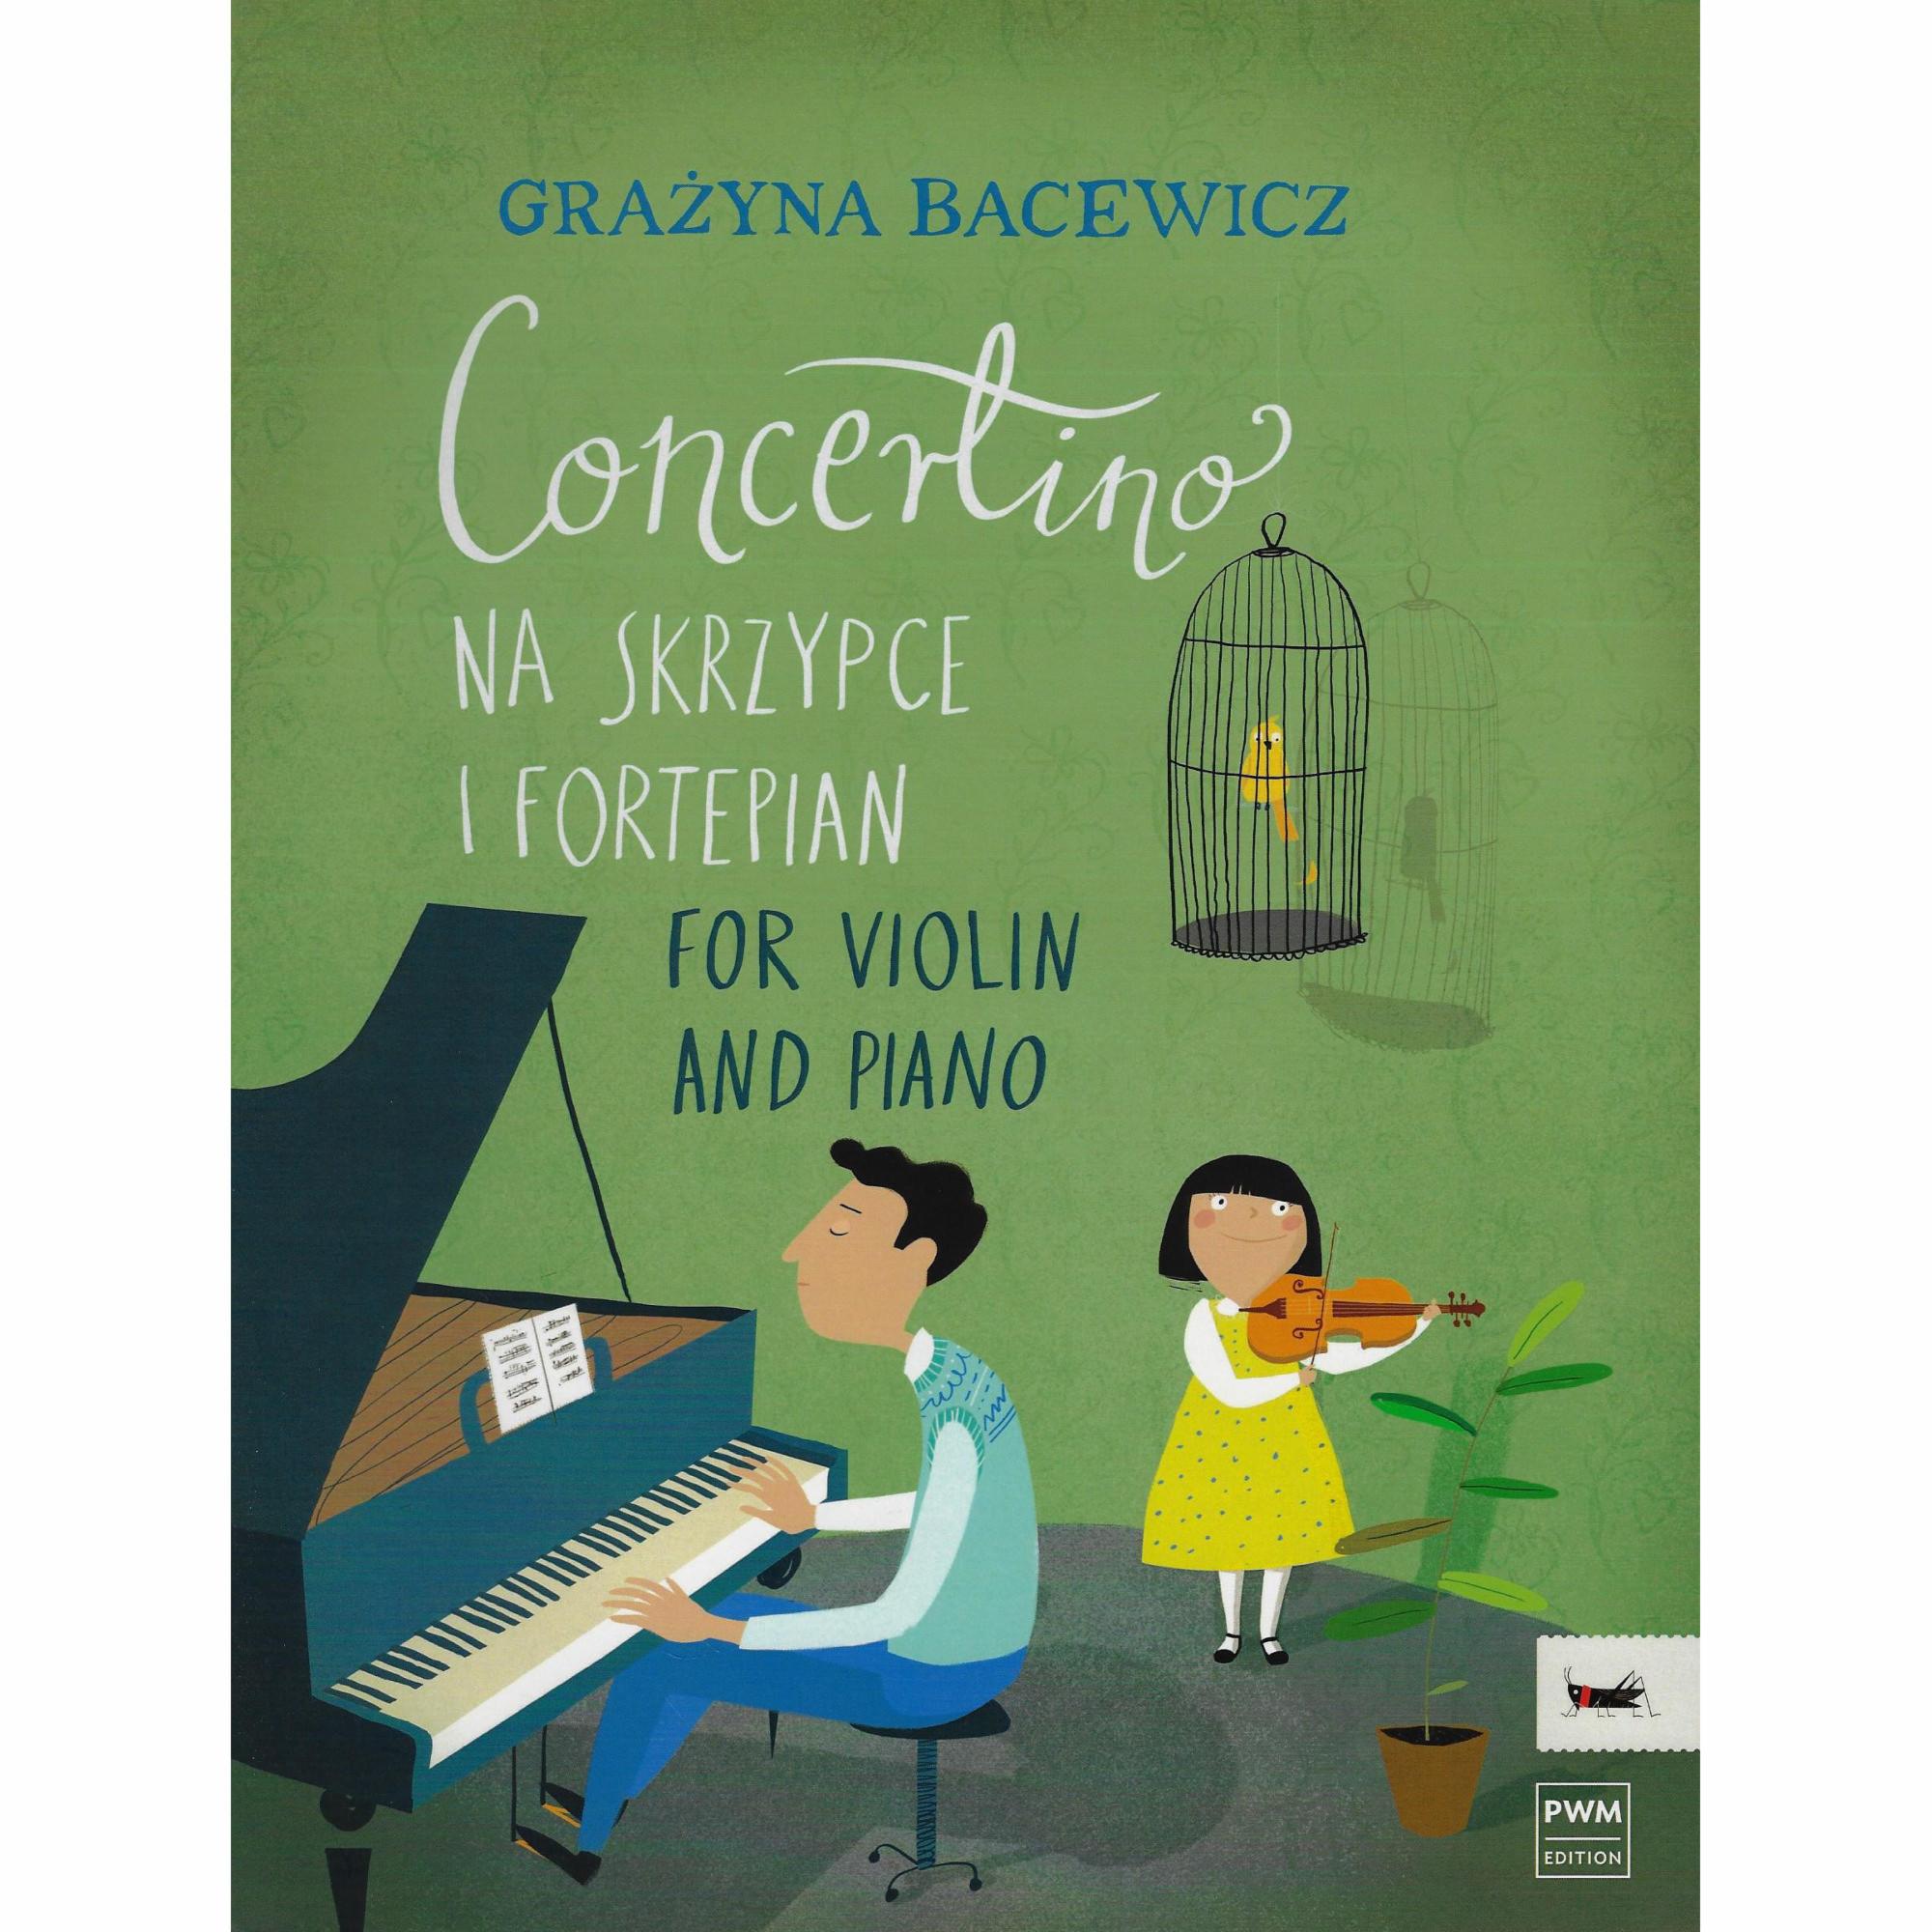 Bacewicz -- Concertino for Violin and Piano